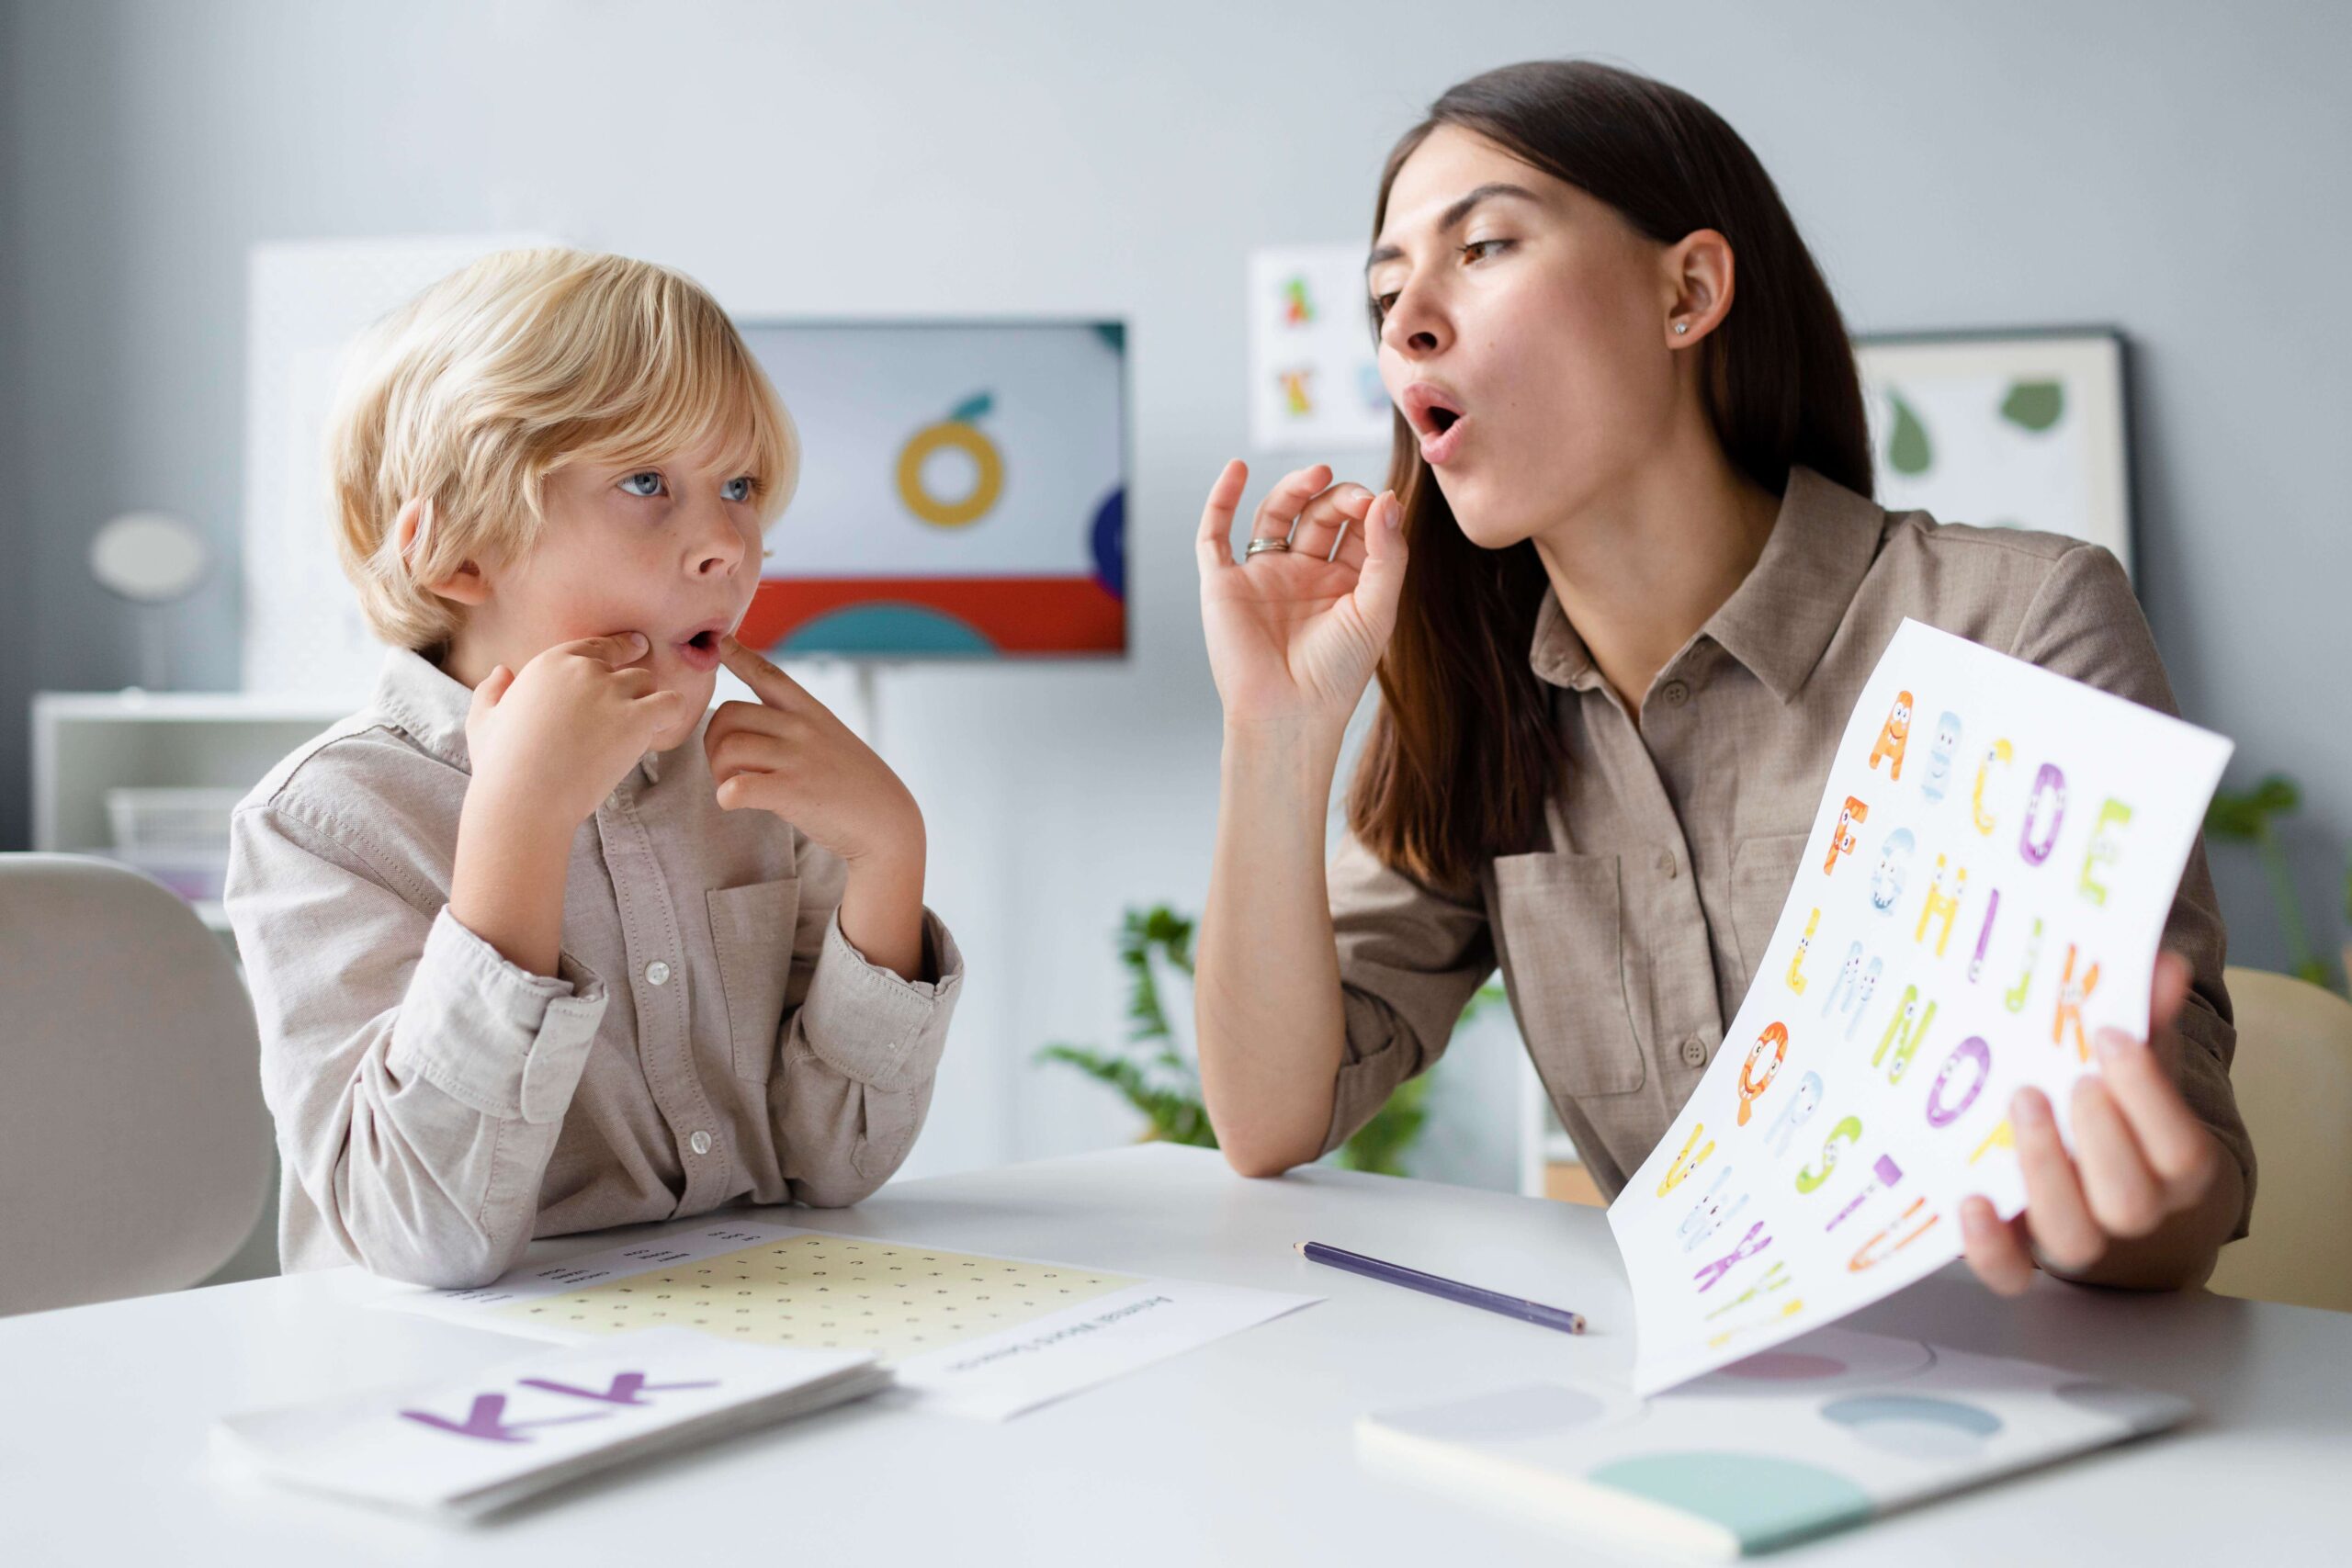 Child Speech & Language Therapy Basics